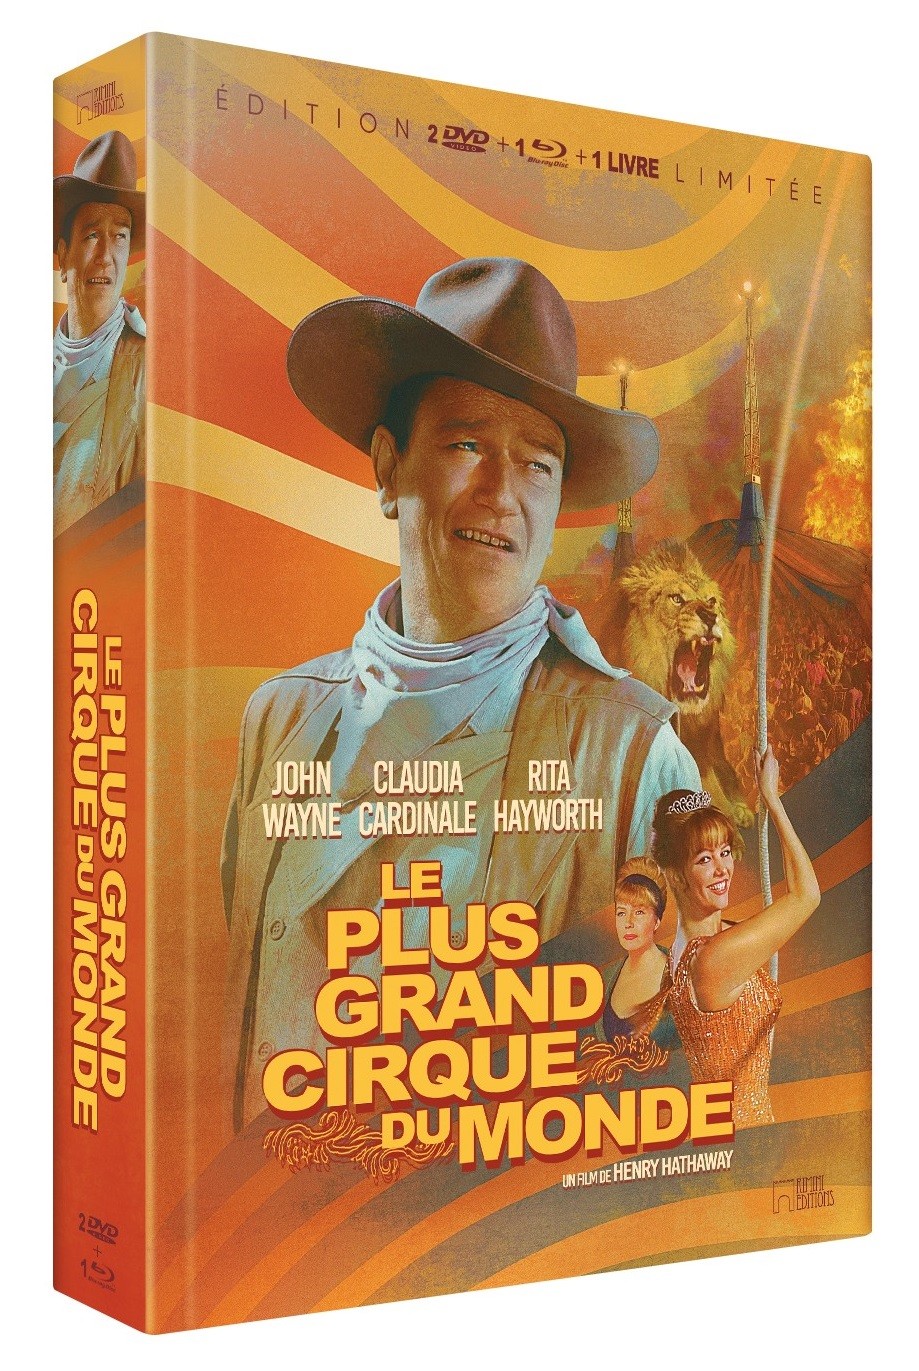 PLUS GRAND CIRQUE DU MONDE (LE) - COMBO 2 DVD + BD - EDITION LIMITEE